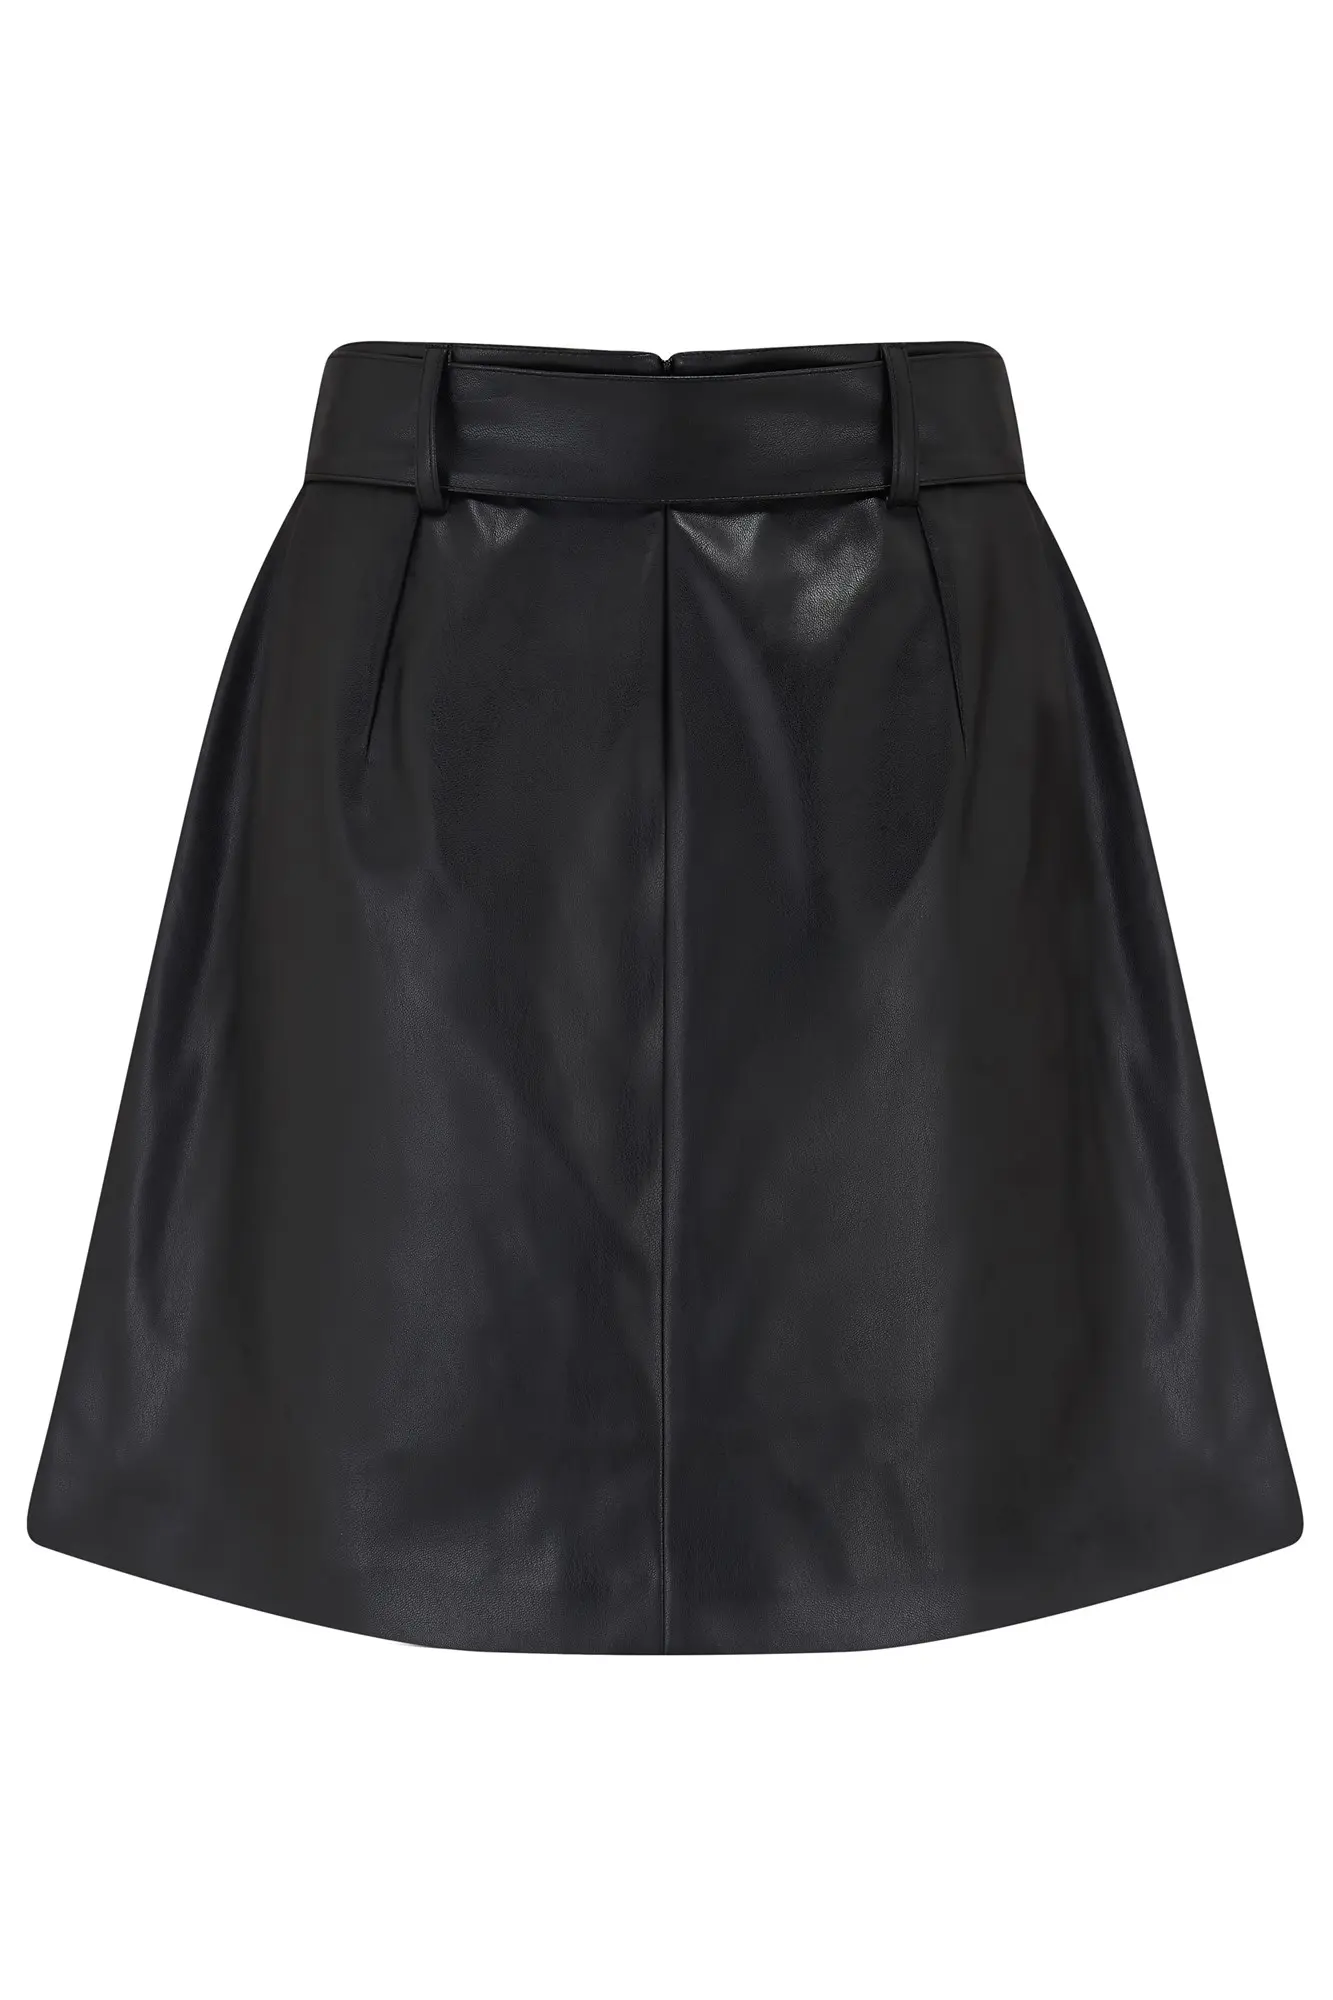 Black Leather Skirt / Faux Leather Skirt / Midi Skirt / Midi Leather Skirt  / Knee Length Skirt / Plus Size Skirt / Maxi Skirt - Etsy